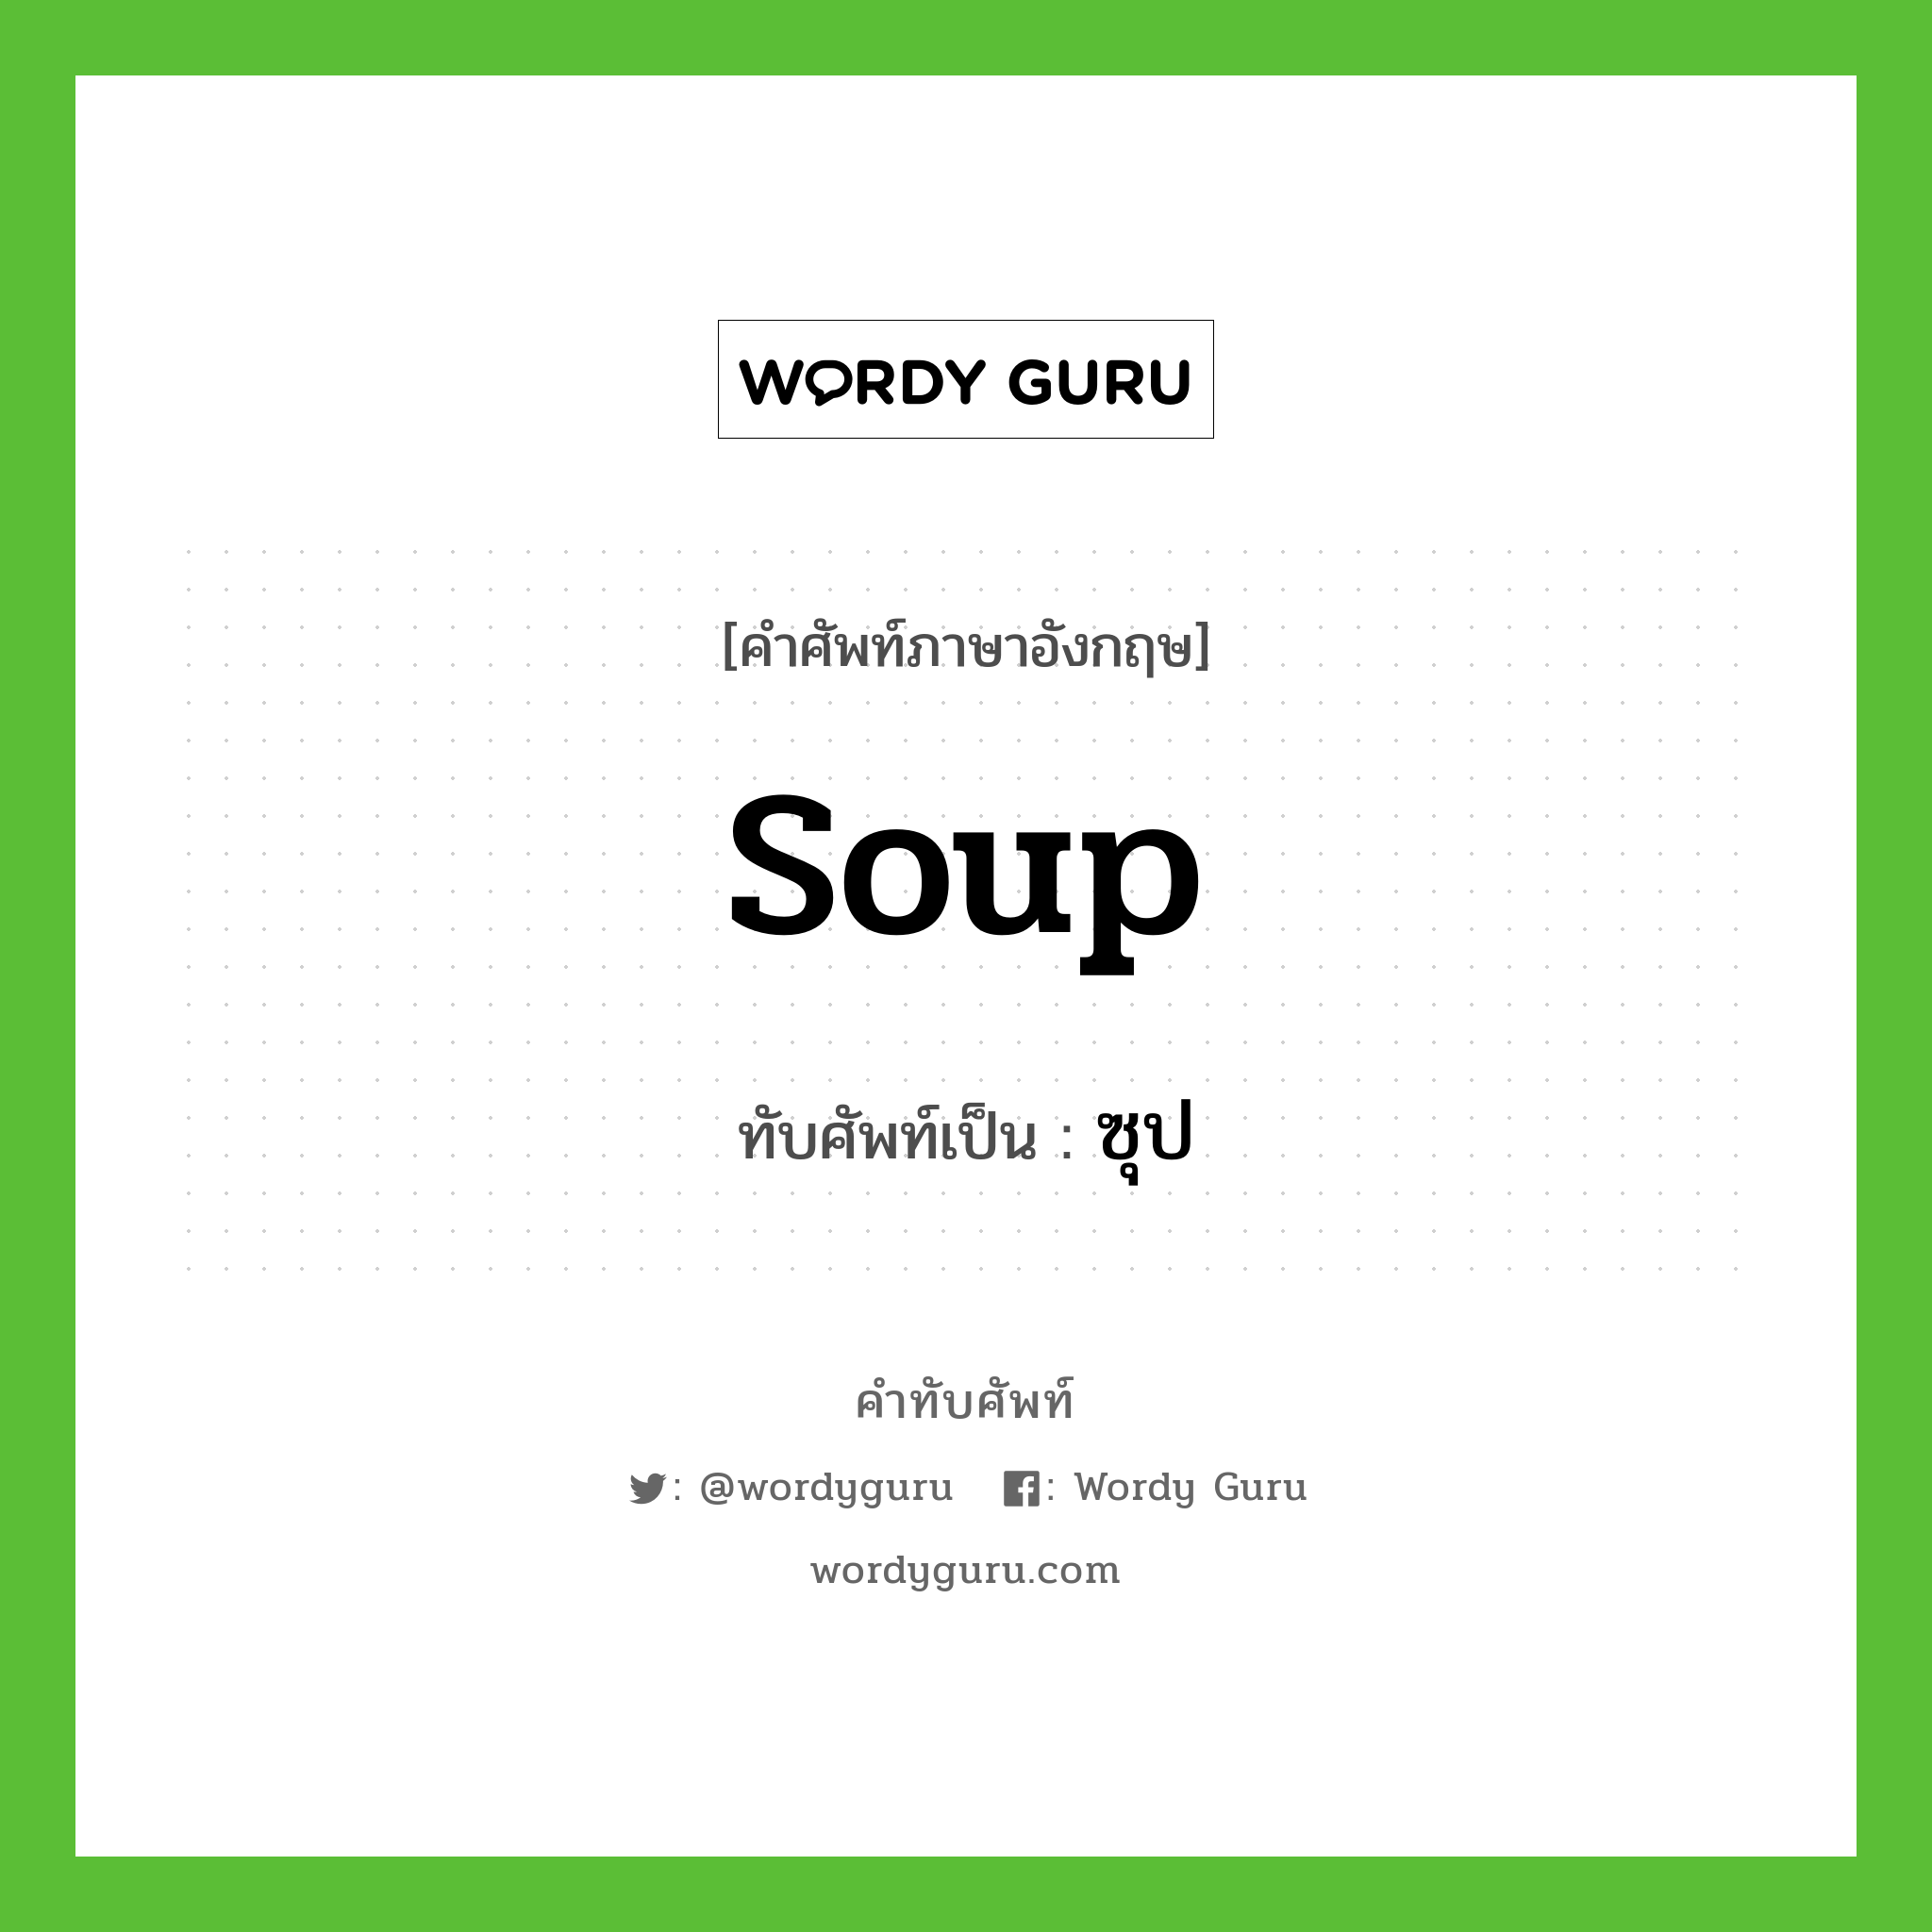 soup เขียนเป็นคำไทยว่าอะไร?, คำศัพท์ภาษาอังกฤษ soup ทับศัพท์เป็น ซุป